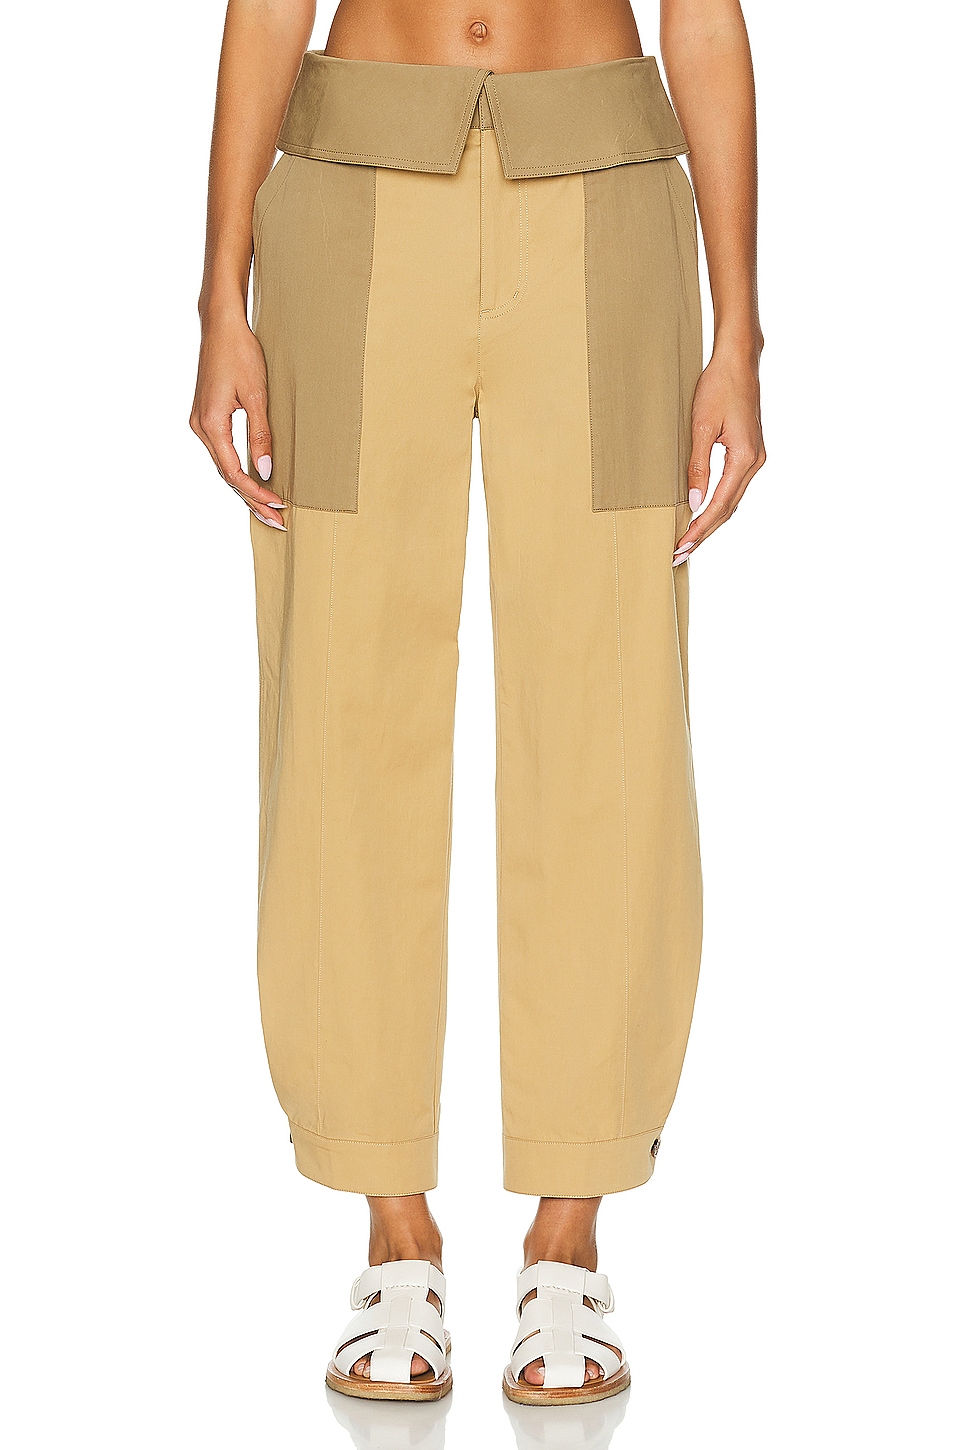 Image 1 of FRAME Foldover Trouser in Light Tan Multi